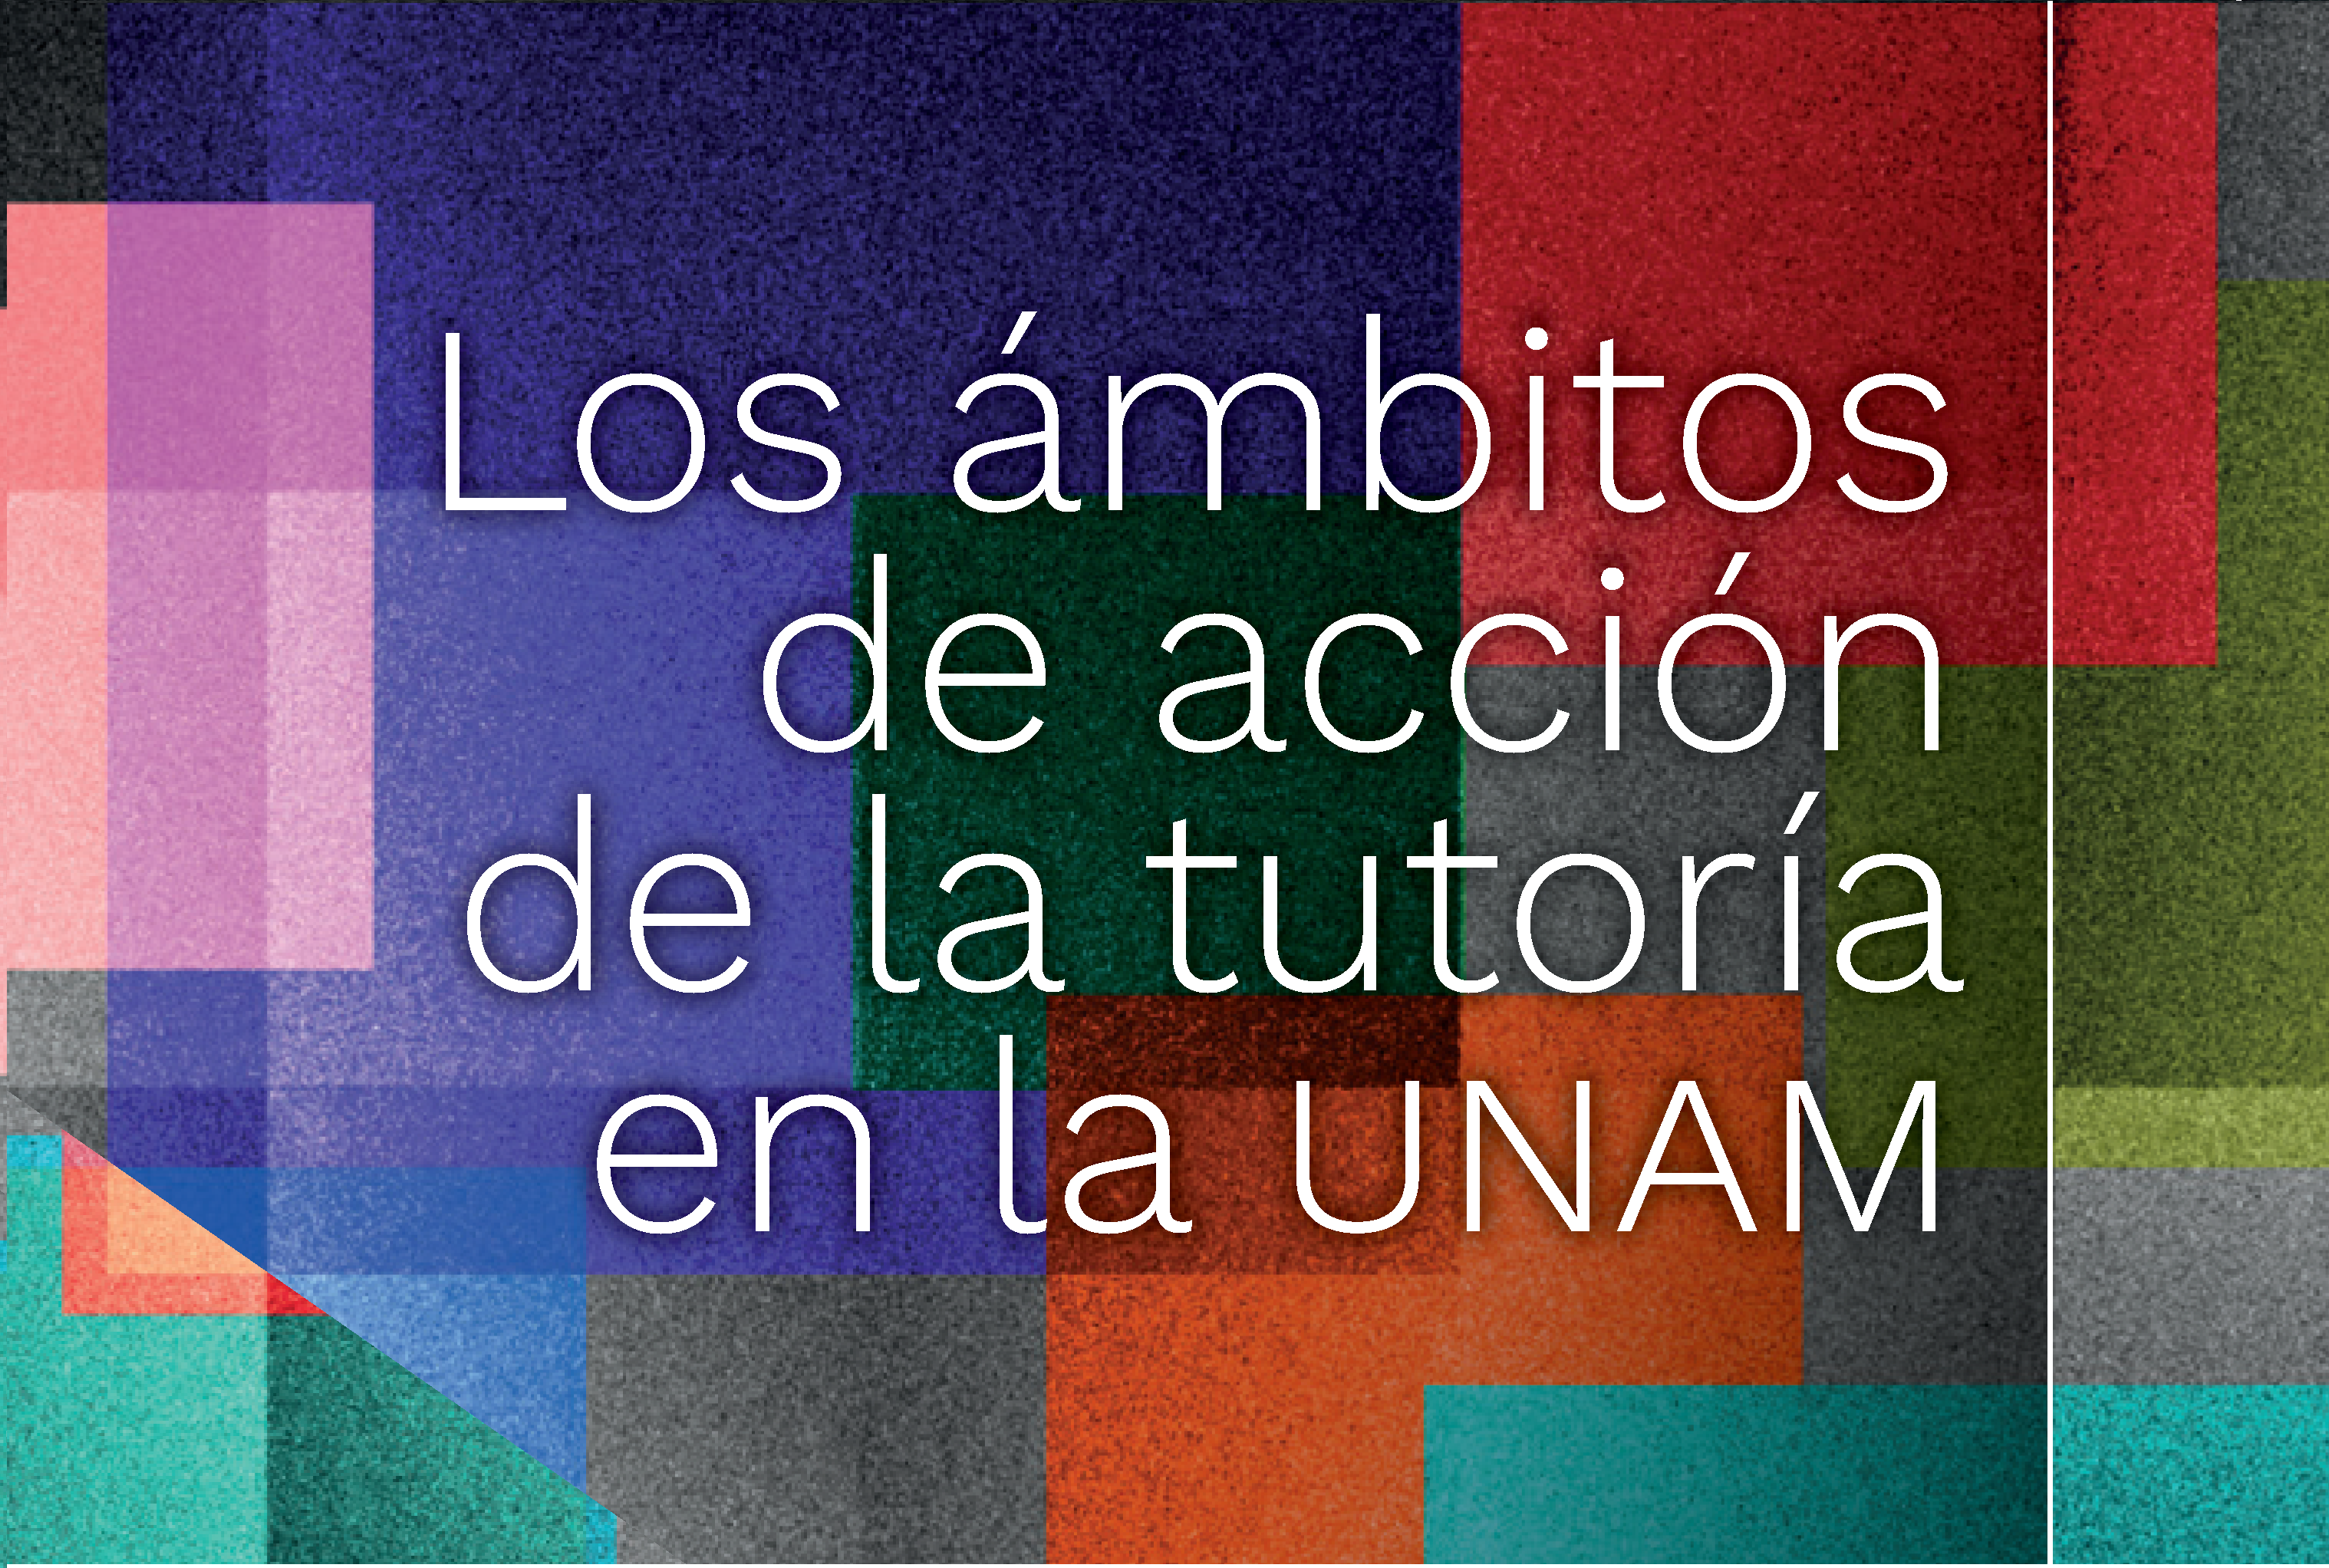 Los ámbitos de acción de la tutoría en la UNAM